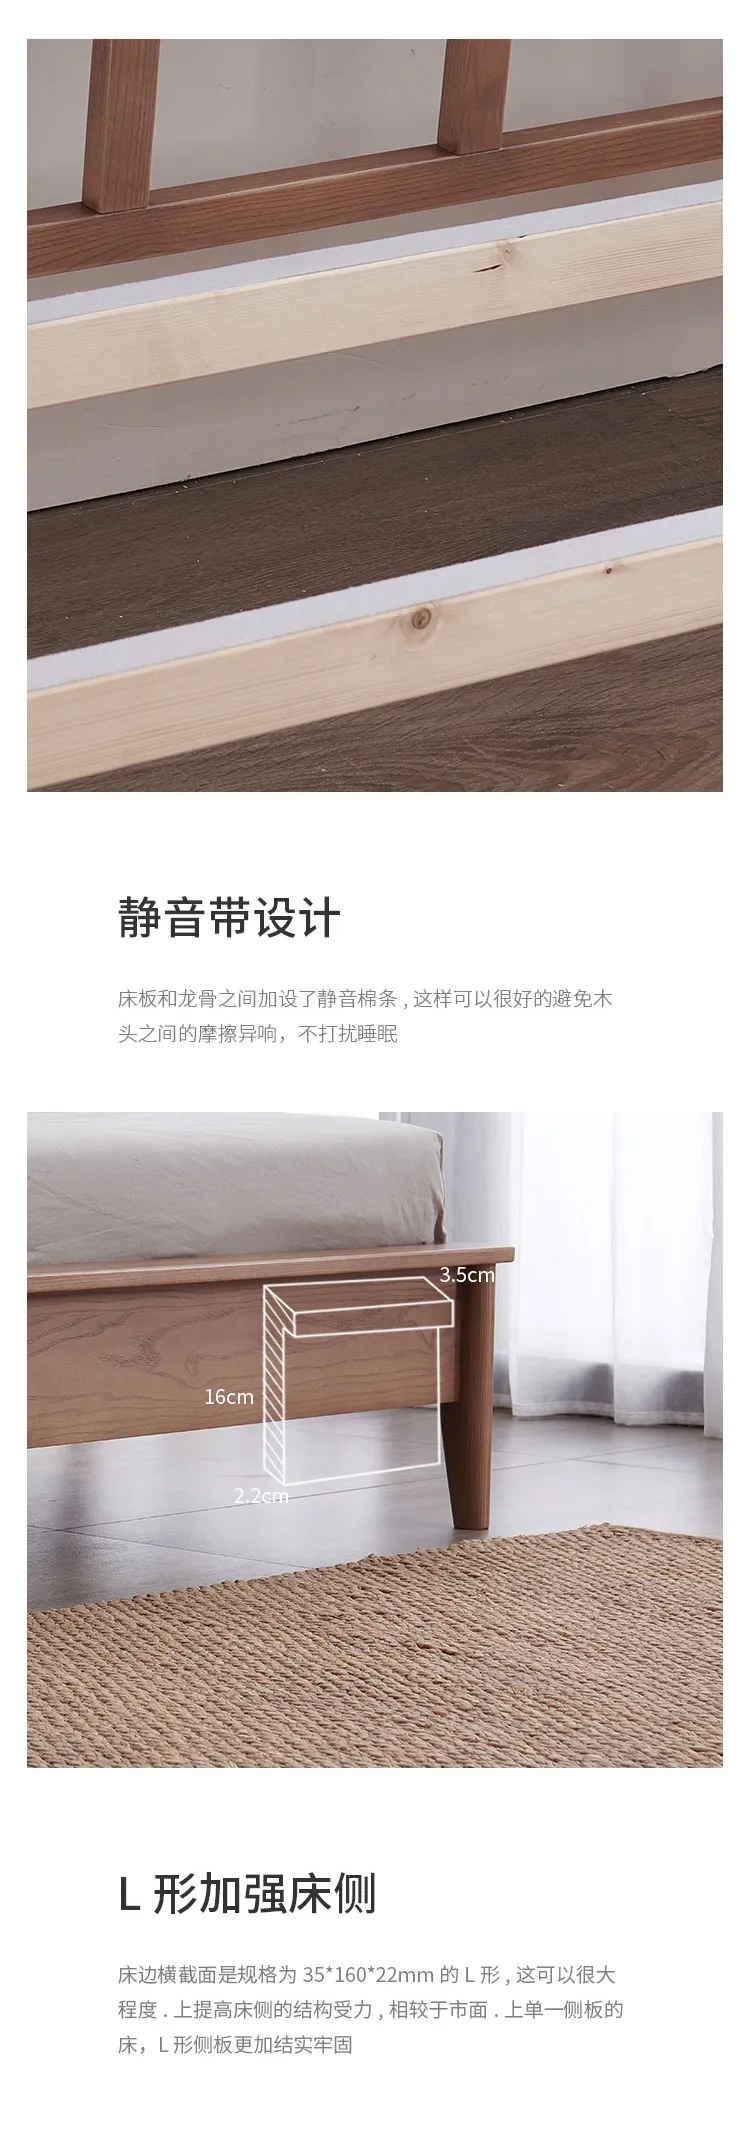 华松居 北欧实木床现代简约主卧家具纯实木卧室家具 W01s-A(图9)